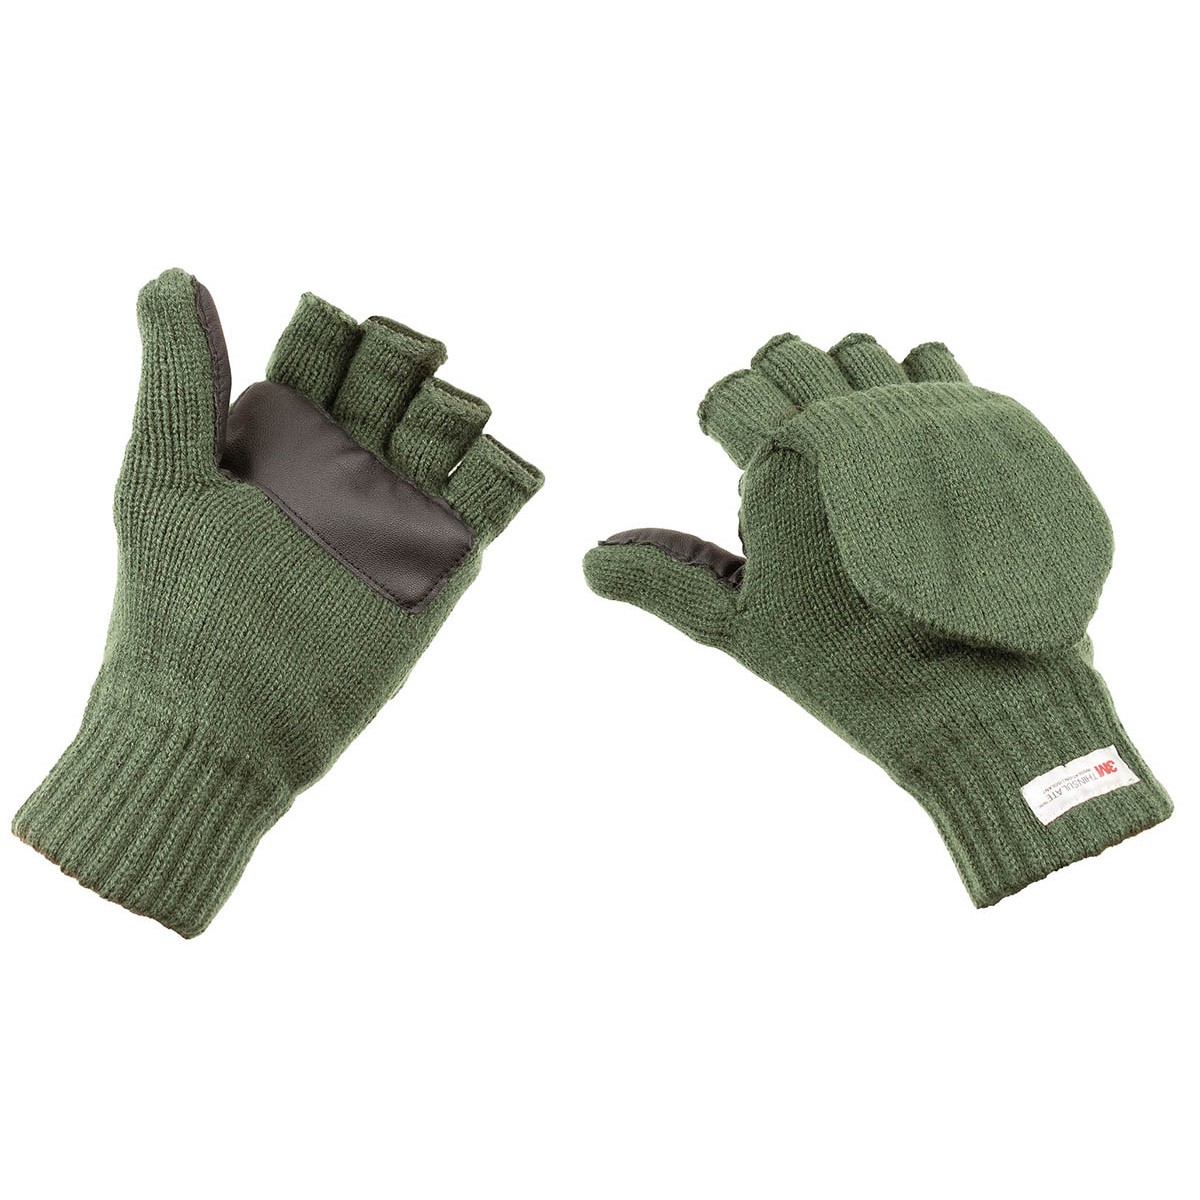 Pletené rukavice bez prstů s podšívkou MFH Thinsulate - olivové, M